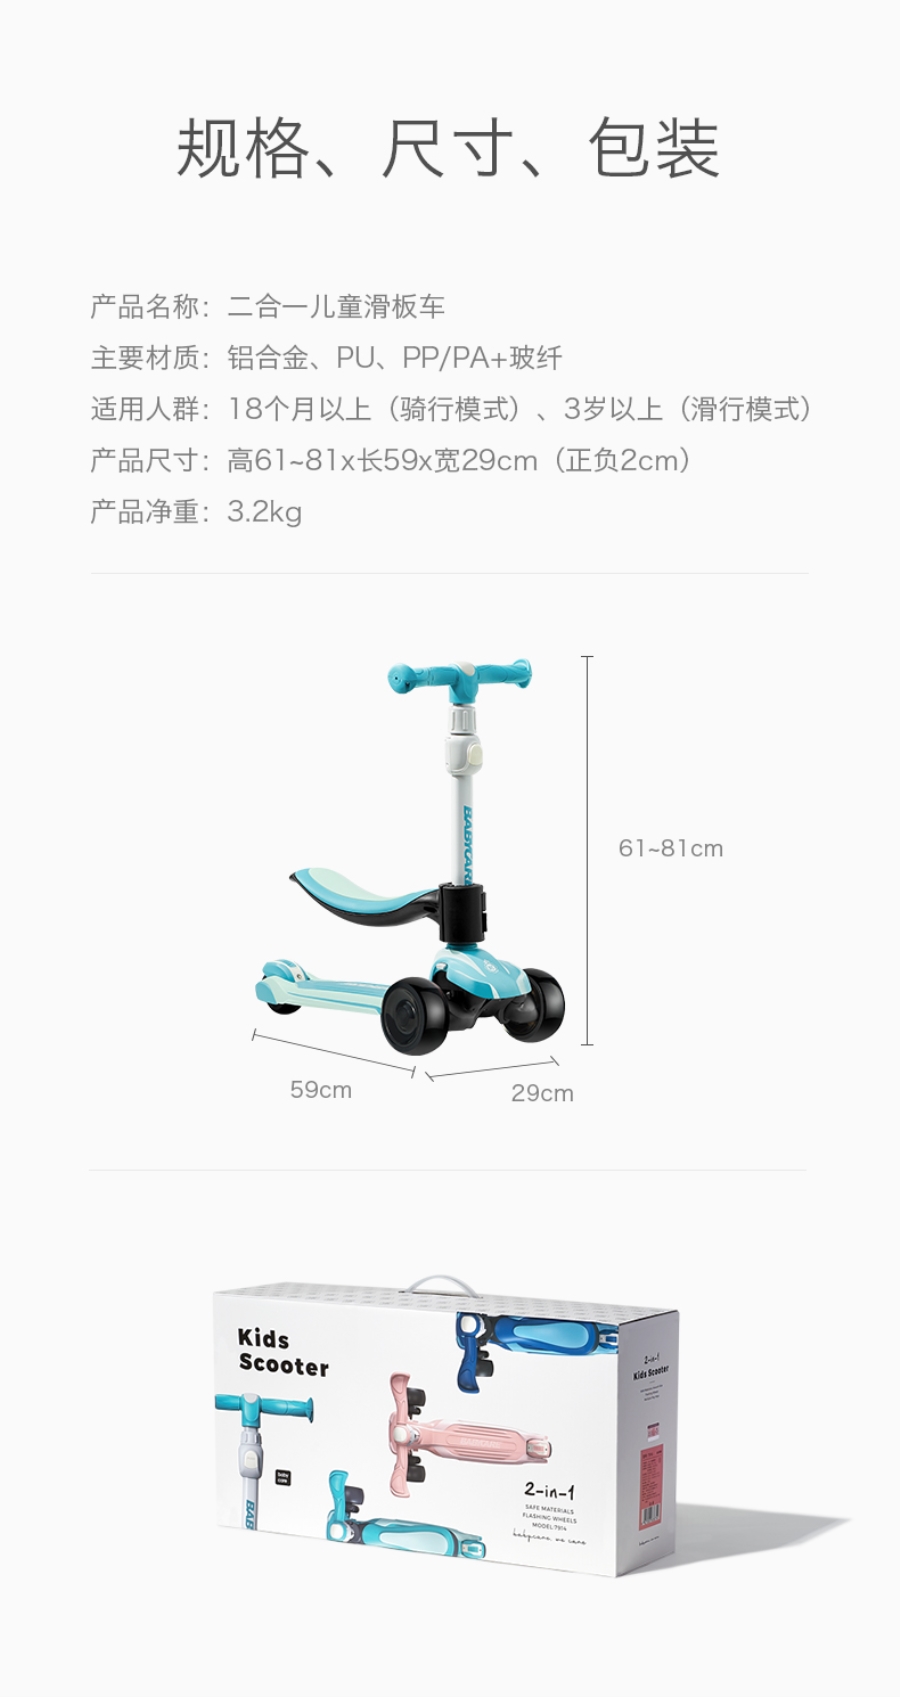 无生产厂家(生产企业):中国大陆保质期(有效期):规格:7921 儿童滑板车